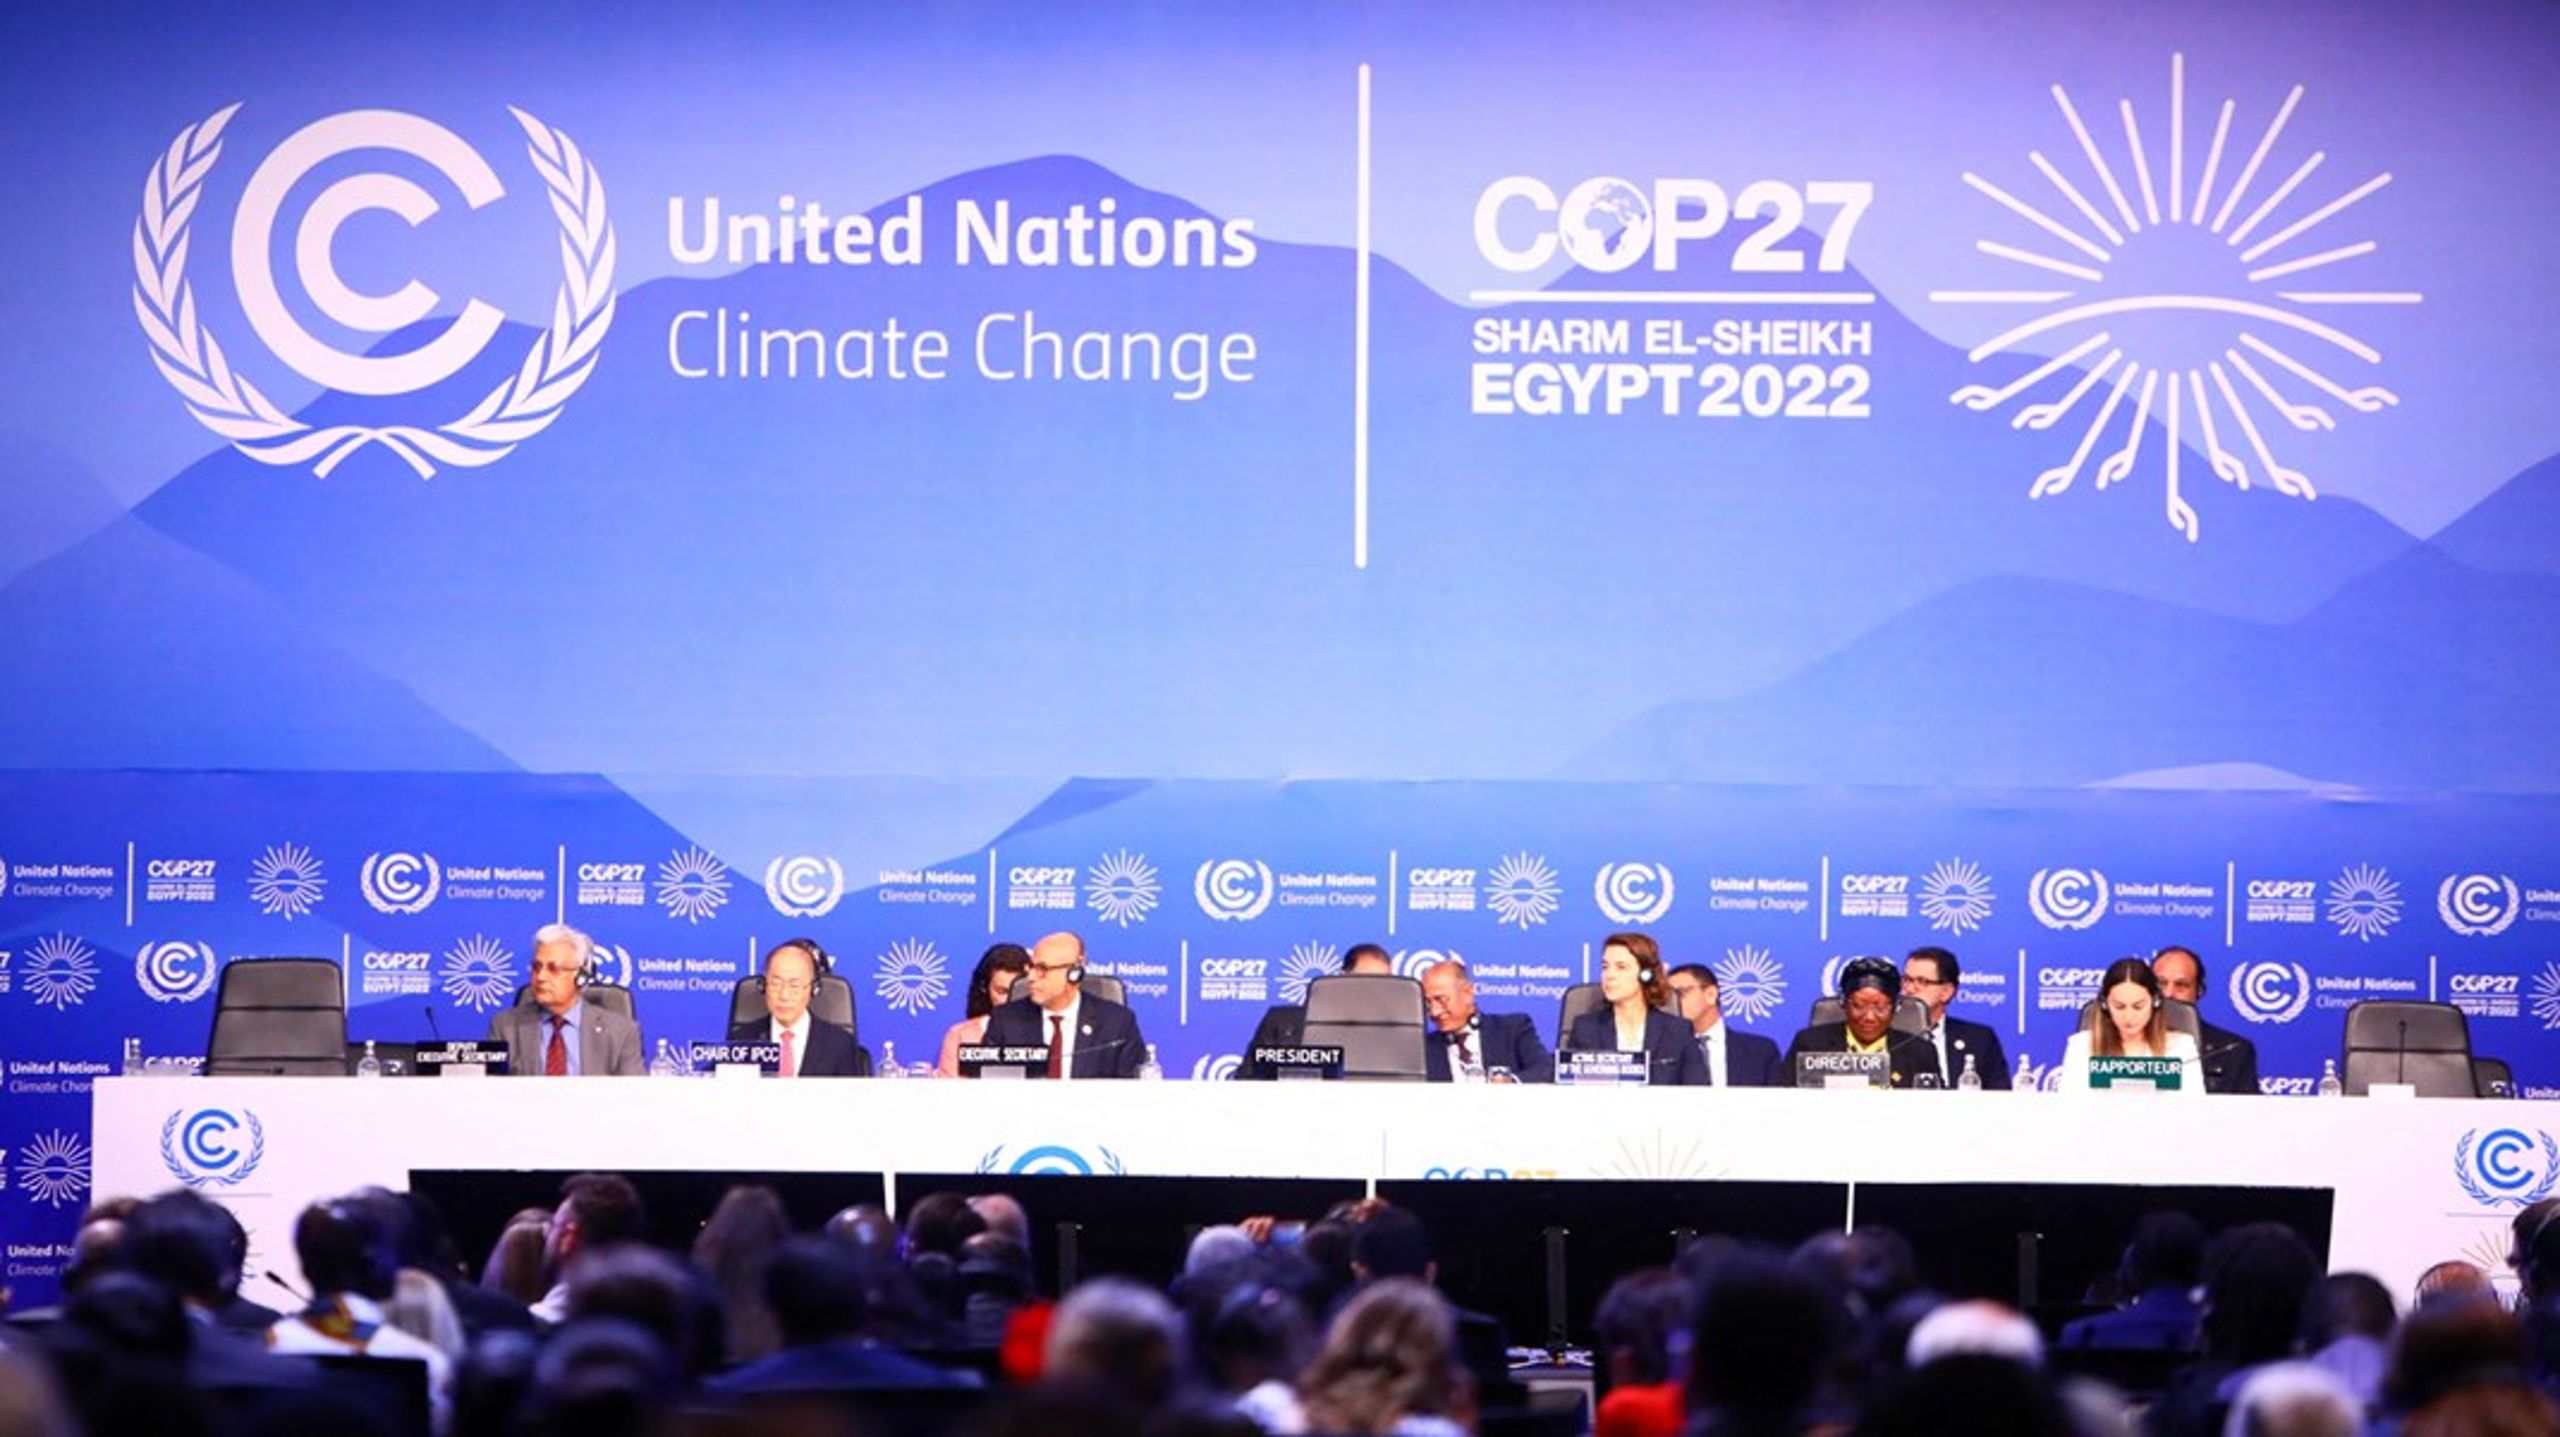 De kommende ugers forhandlinger på klimatopmødet COP27 ser ud til at blive svære. Selv dagordenen til forhandlingerne blev så svær at enes om, at topmødets åbning måtte udskydes en time, skriver Mattias Söderberg.<br><br>